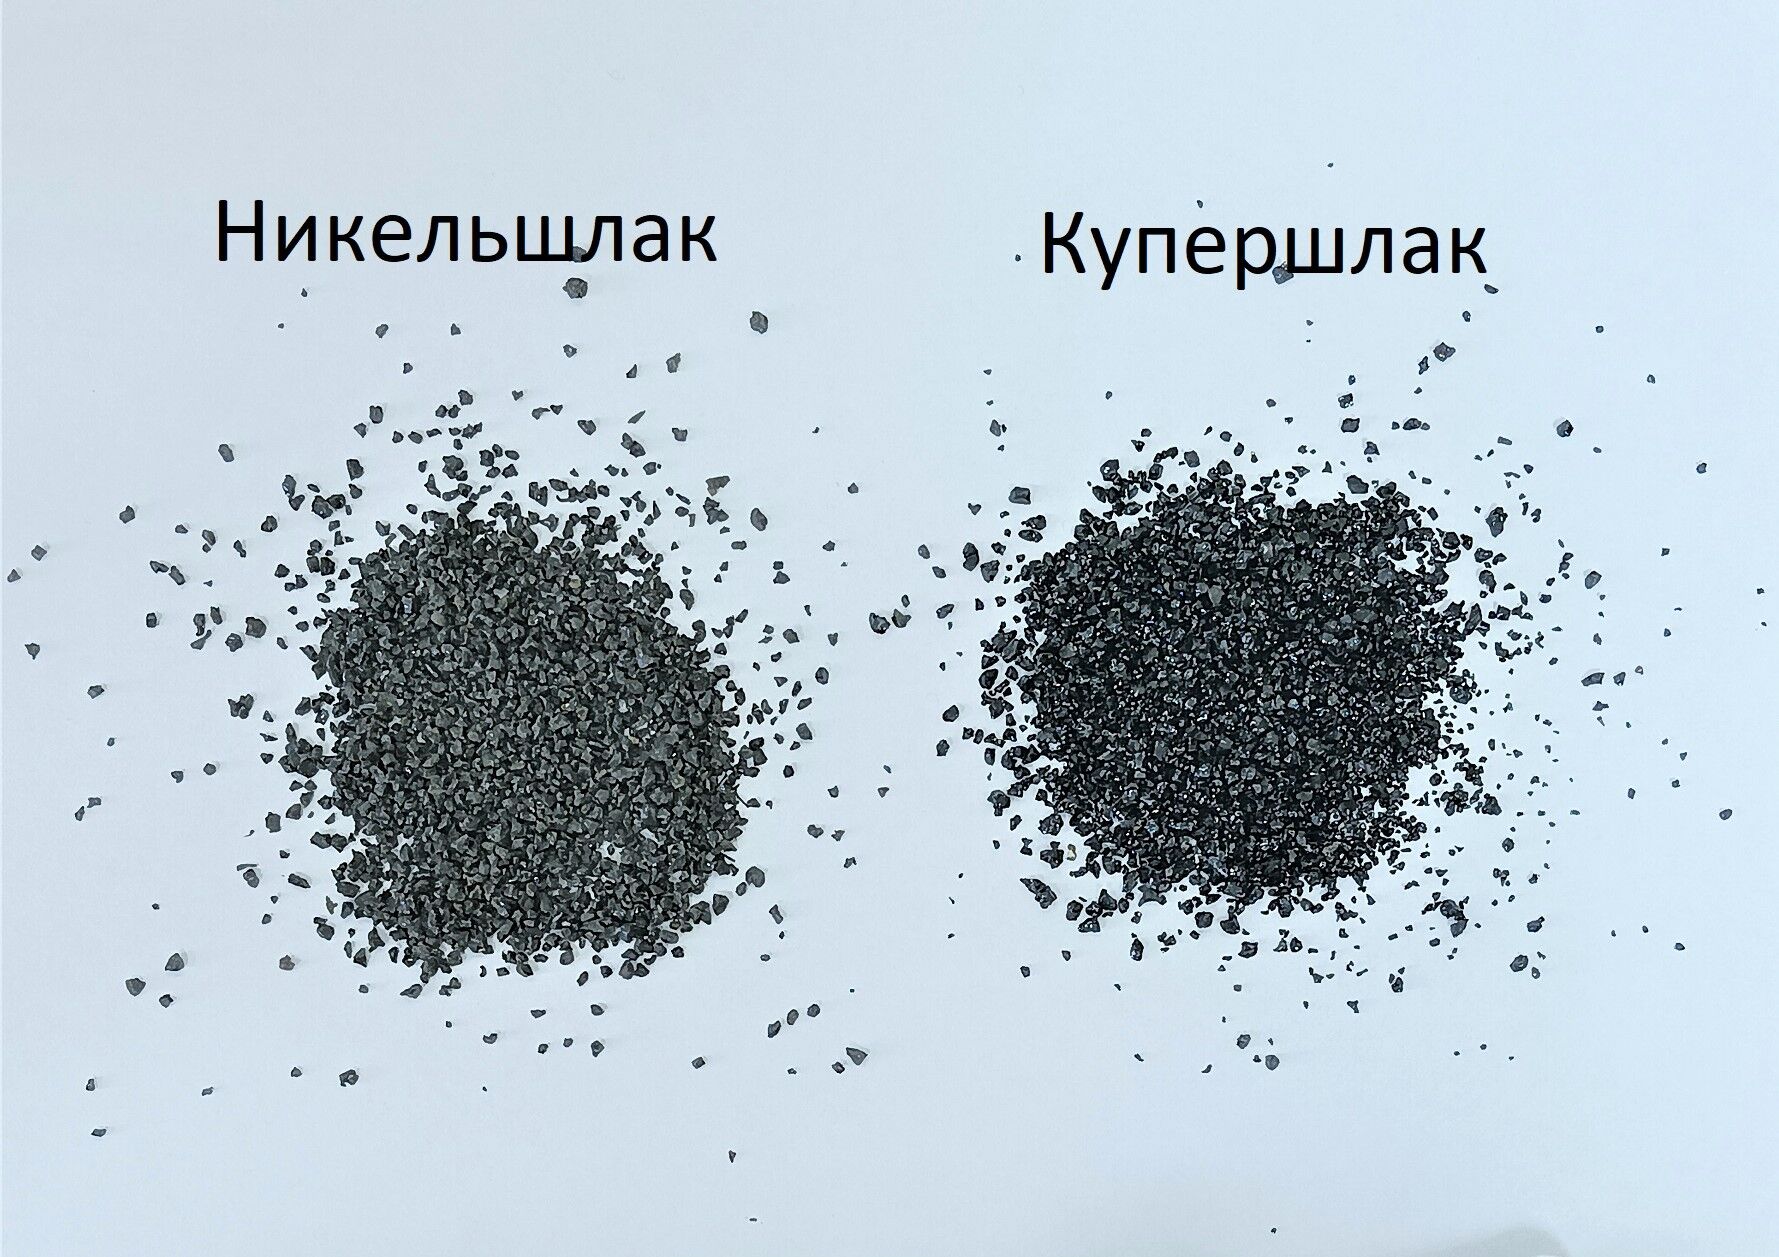 Никельшлак (абразивный порошок) фракция 0,2-1,6 мм, 1 тонна в МКР